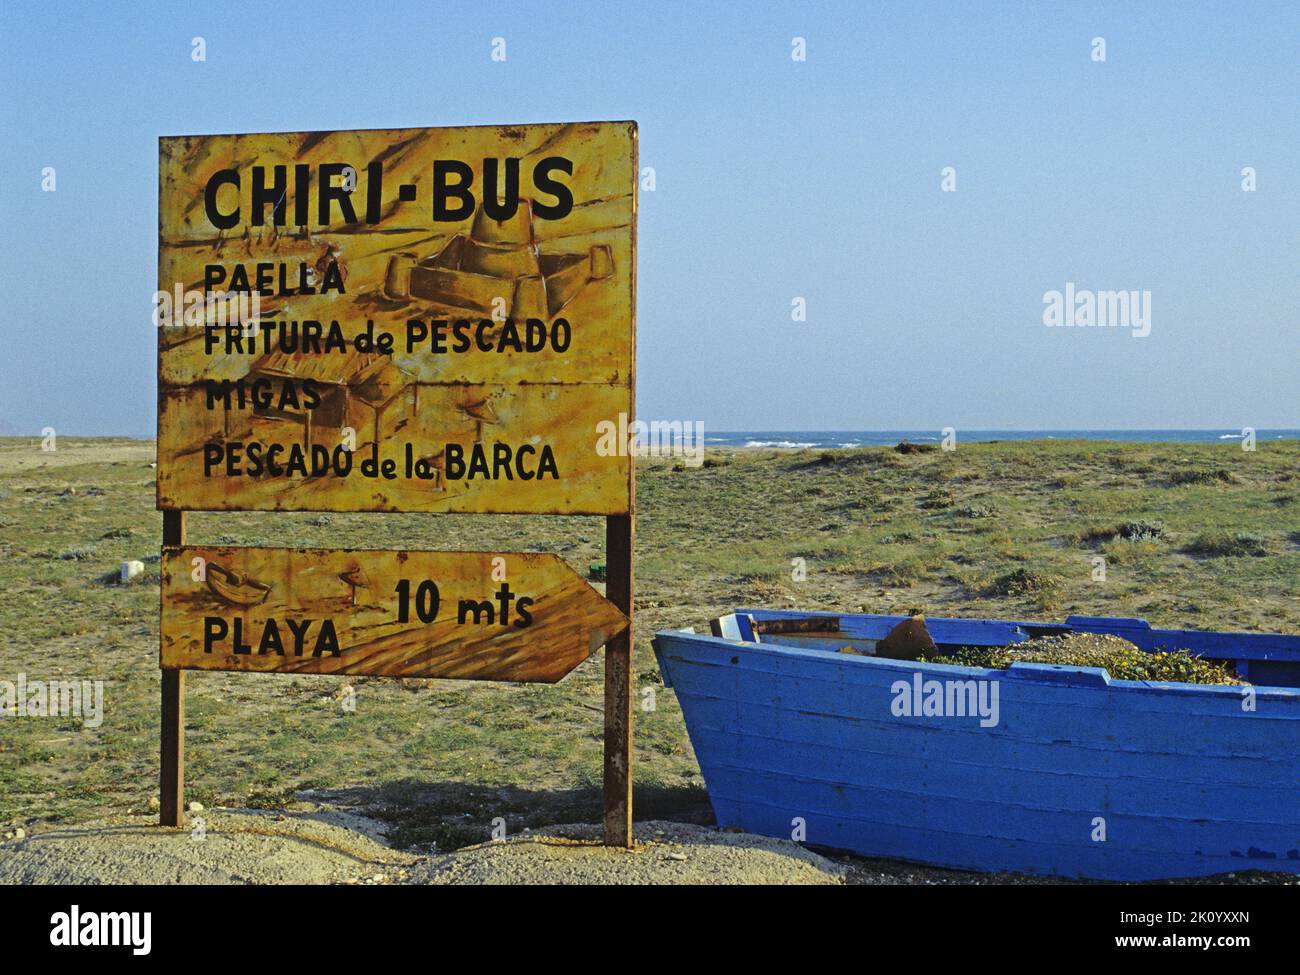 a signboard advertising a small restaurant on the beach, Cabo de Gata, Costa de Almeria,  Andalusia, Spain Stock Photo